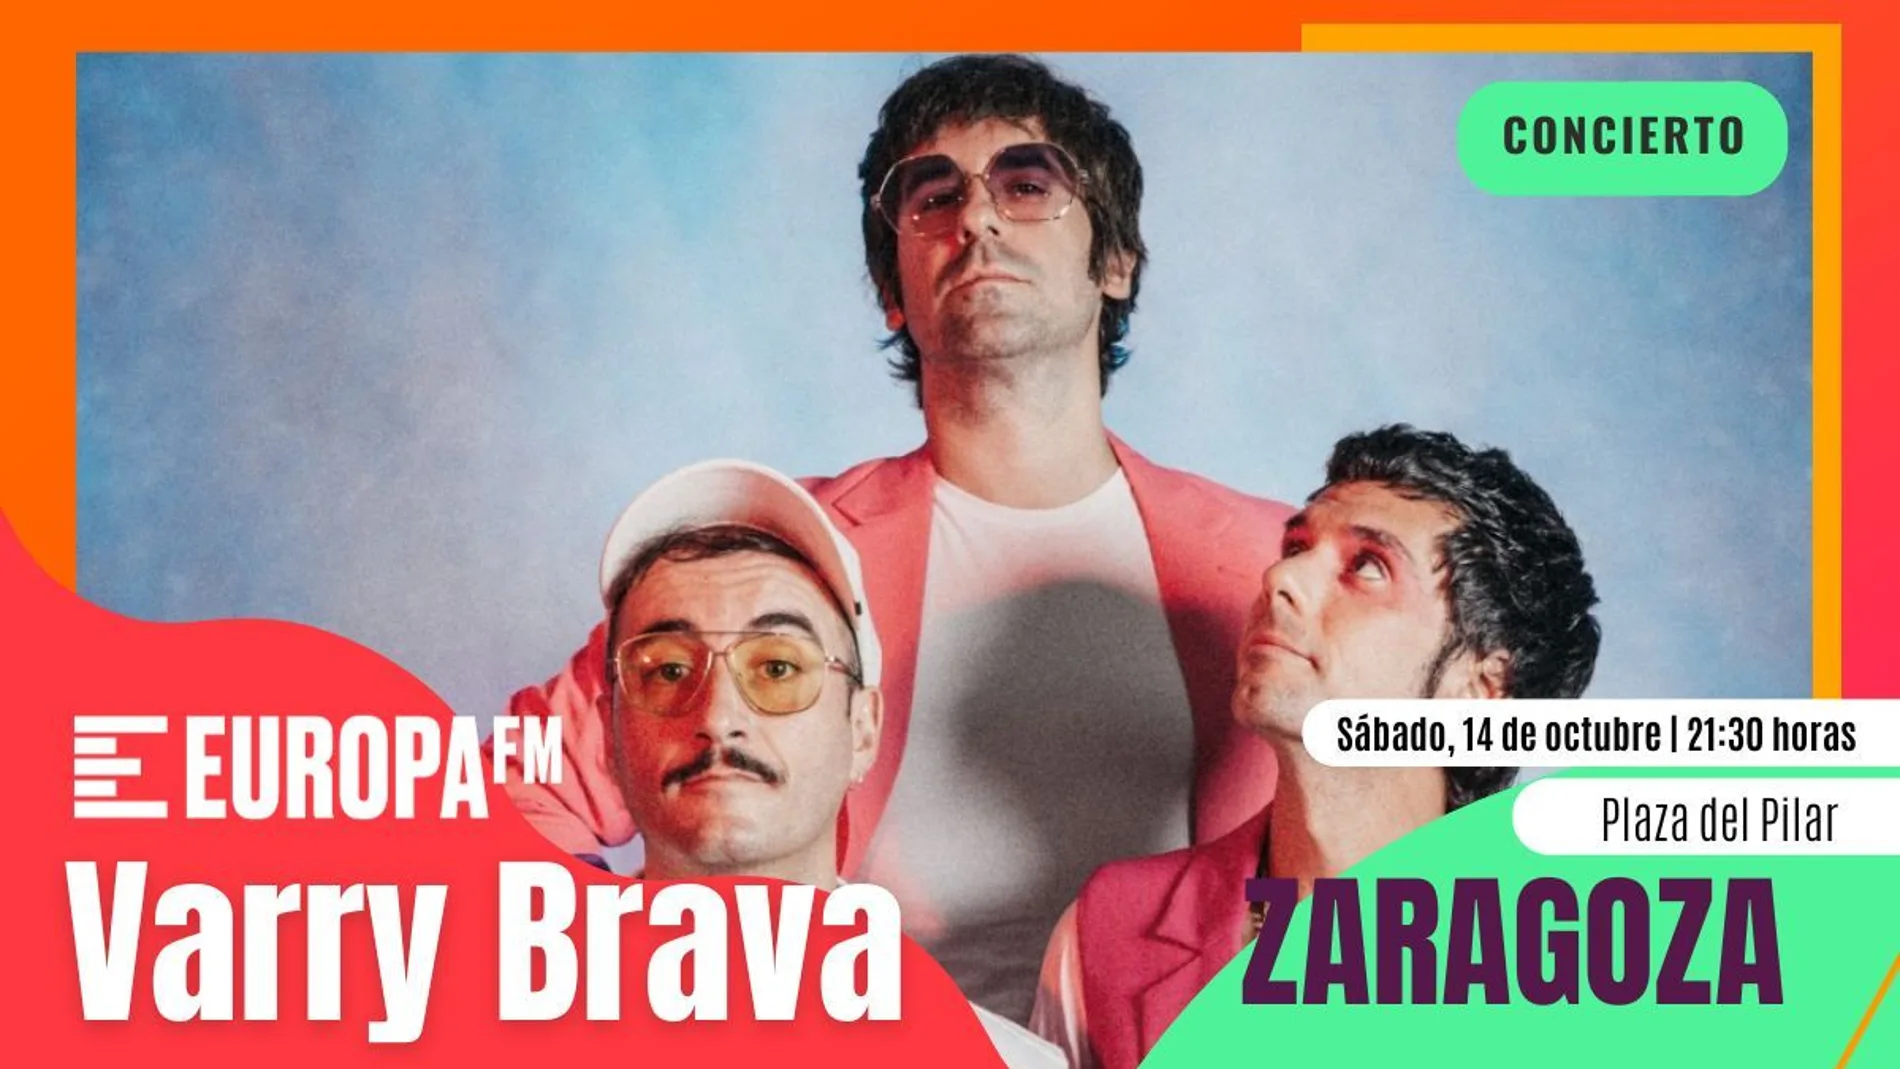 Apúntate al concierto de Varry Brava en las Fiestas del Pilar de Zaragoza